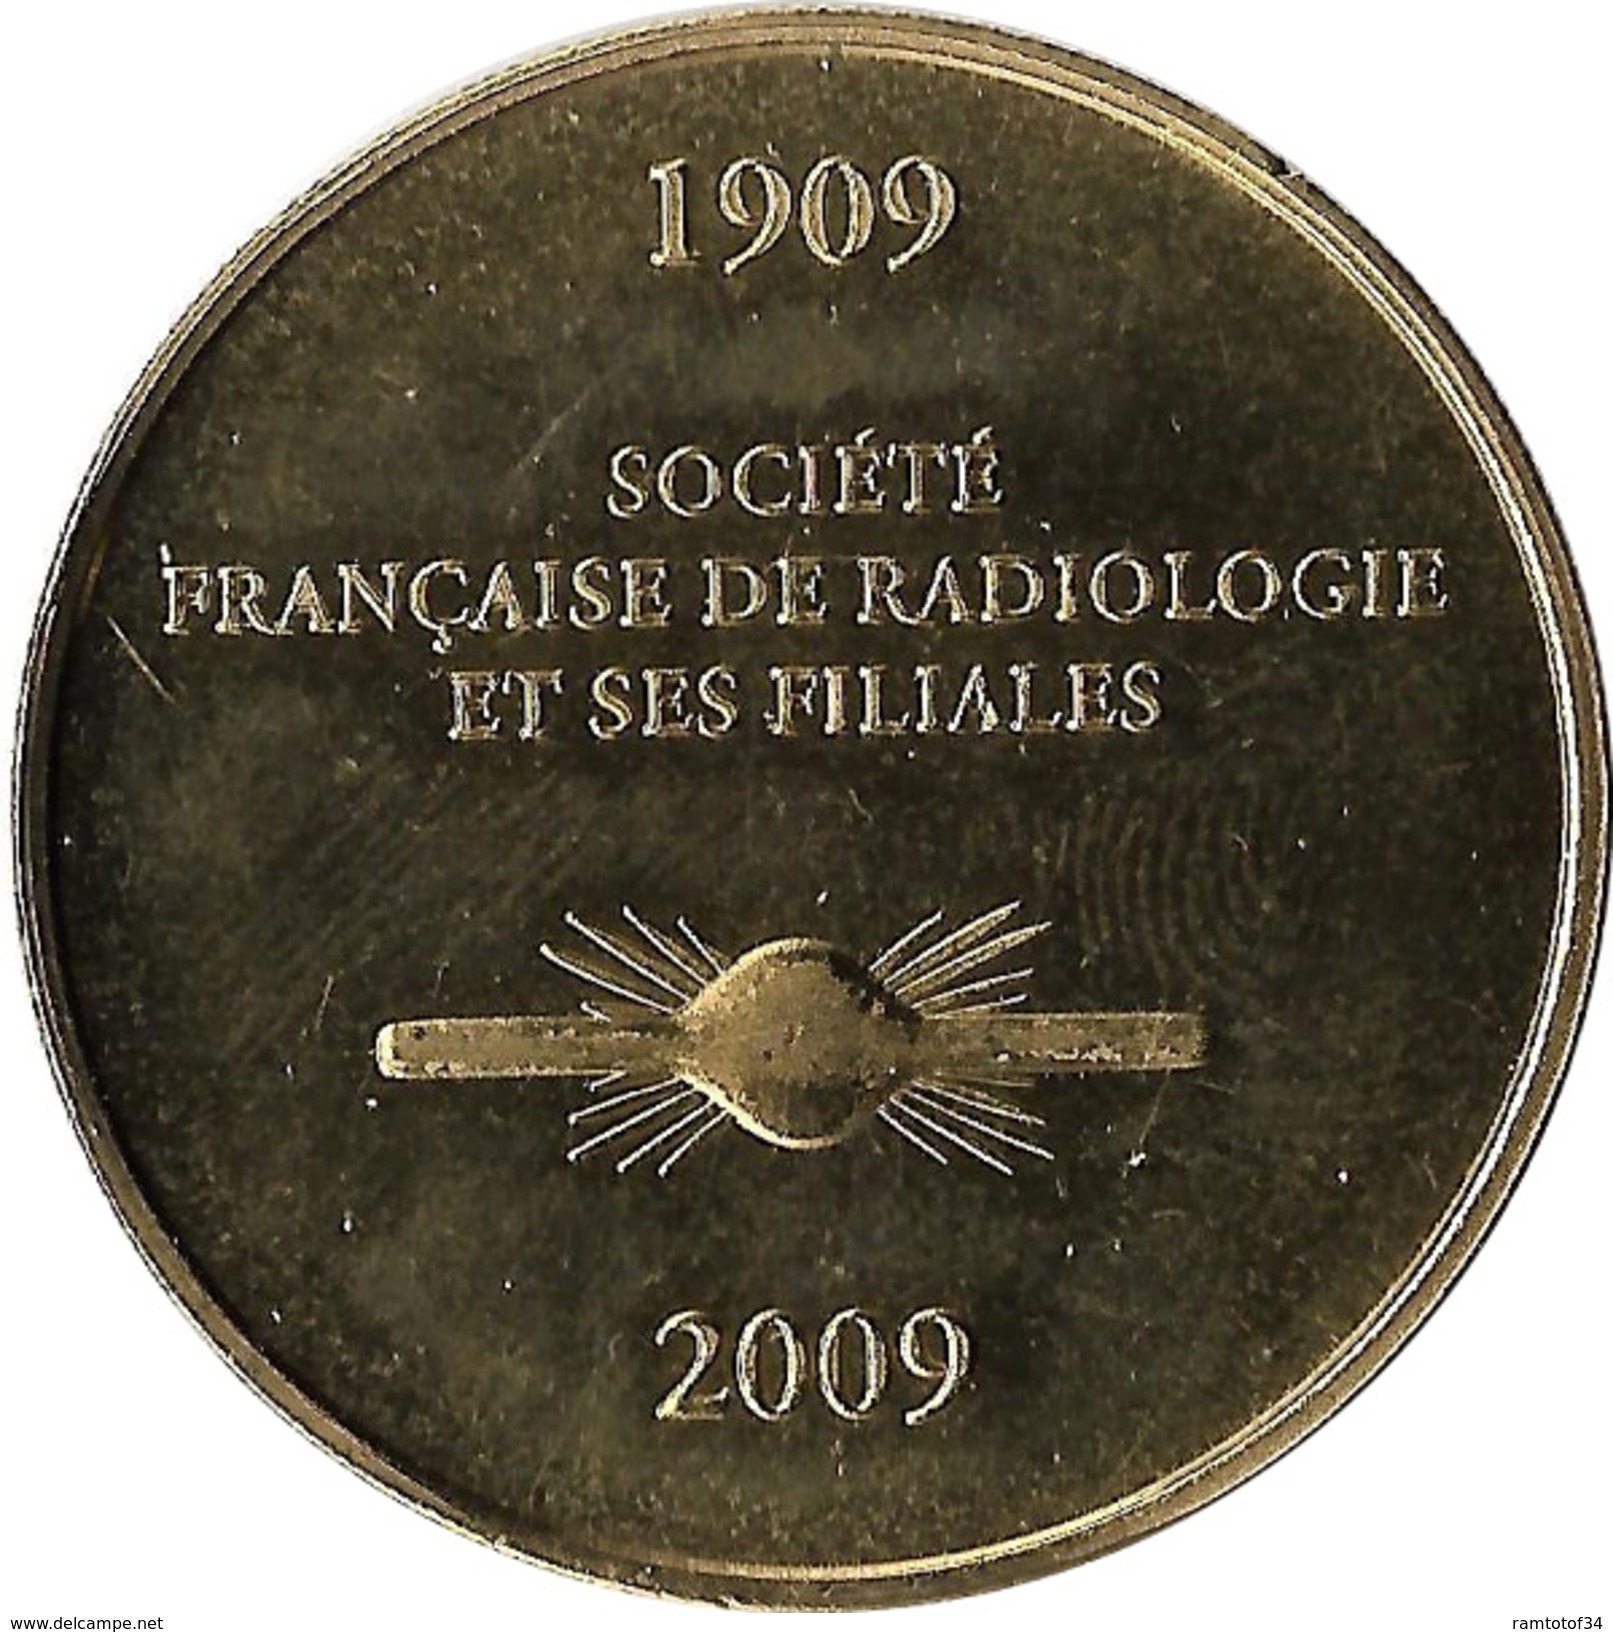 2009 AB174 - PARIS - Société Francaise De Radiologie / ARTHUS BERTRAND - 2009